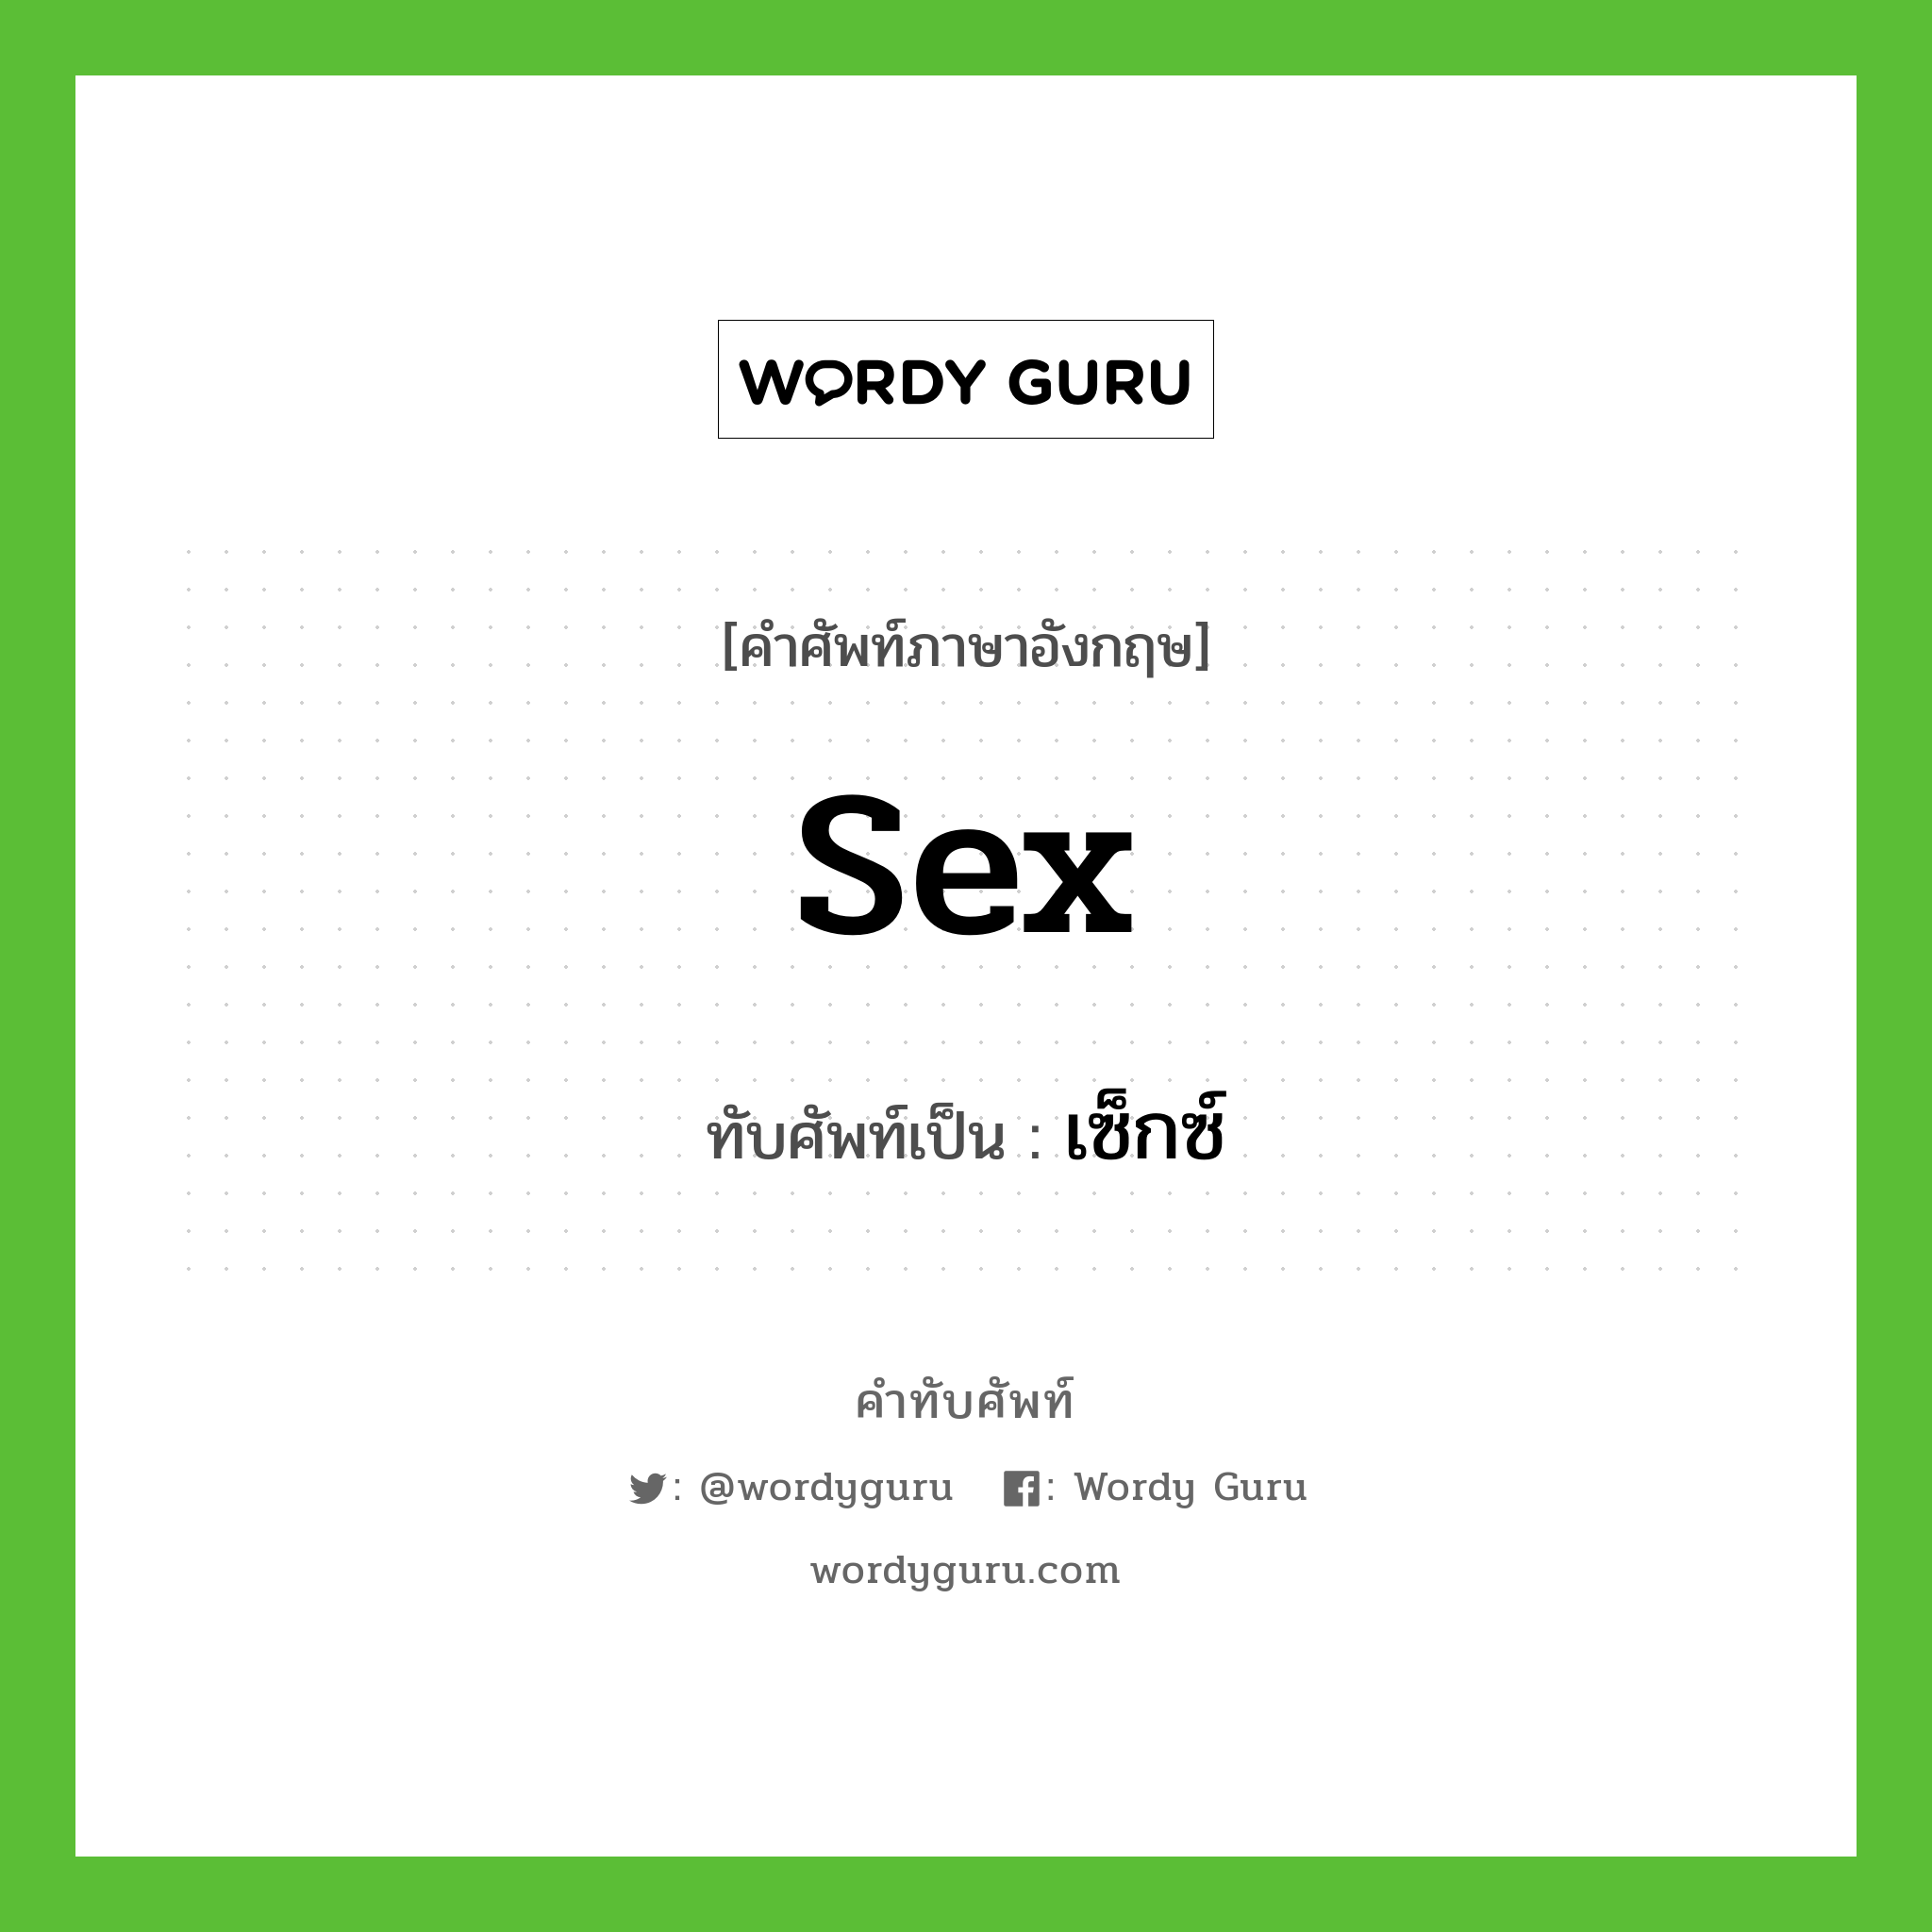 sex เขียนเป็นคำไทยว่าอะไร?, คำศัพท์ภาษาอังกฤษ sex ทับศัพท์เป็น เซ็กซ์